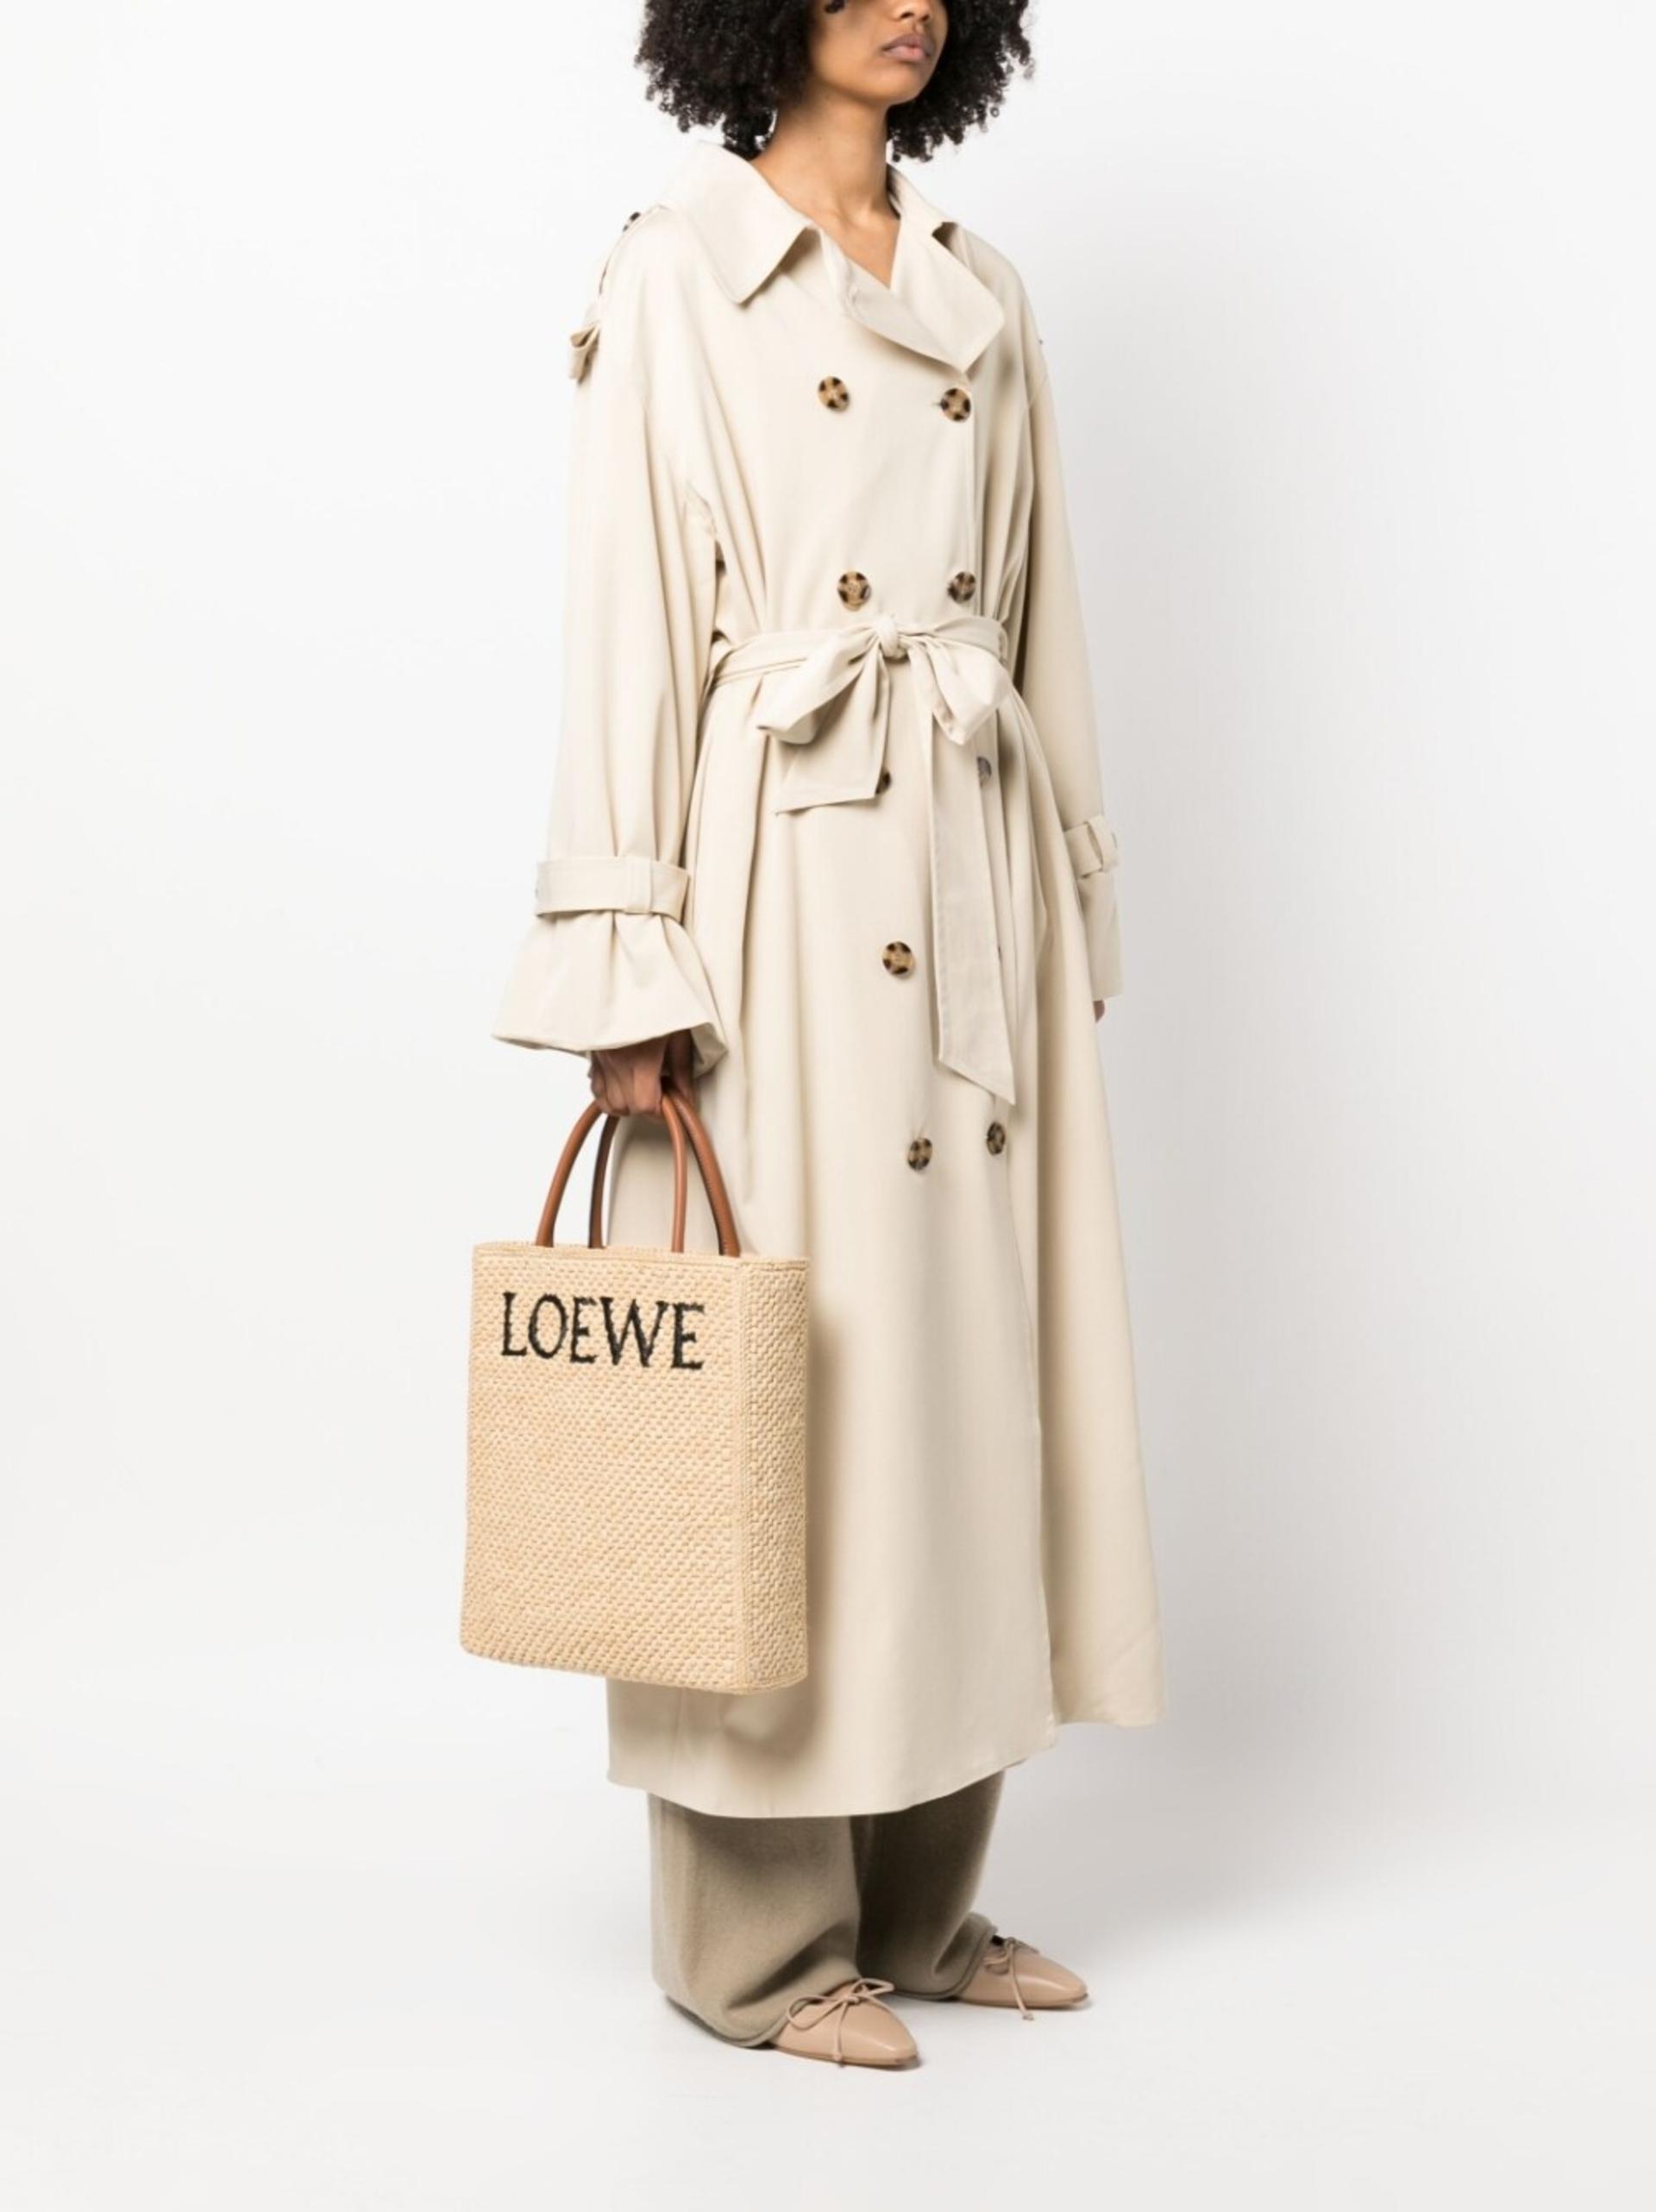 A4 LOEWE RAFFIA TOTE BAG for Women - Loewe